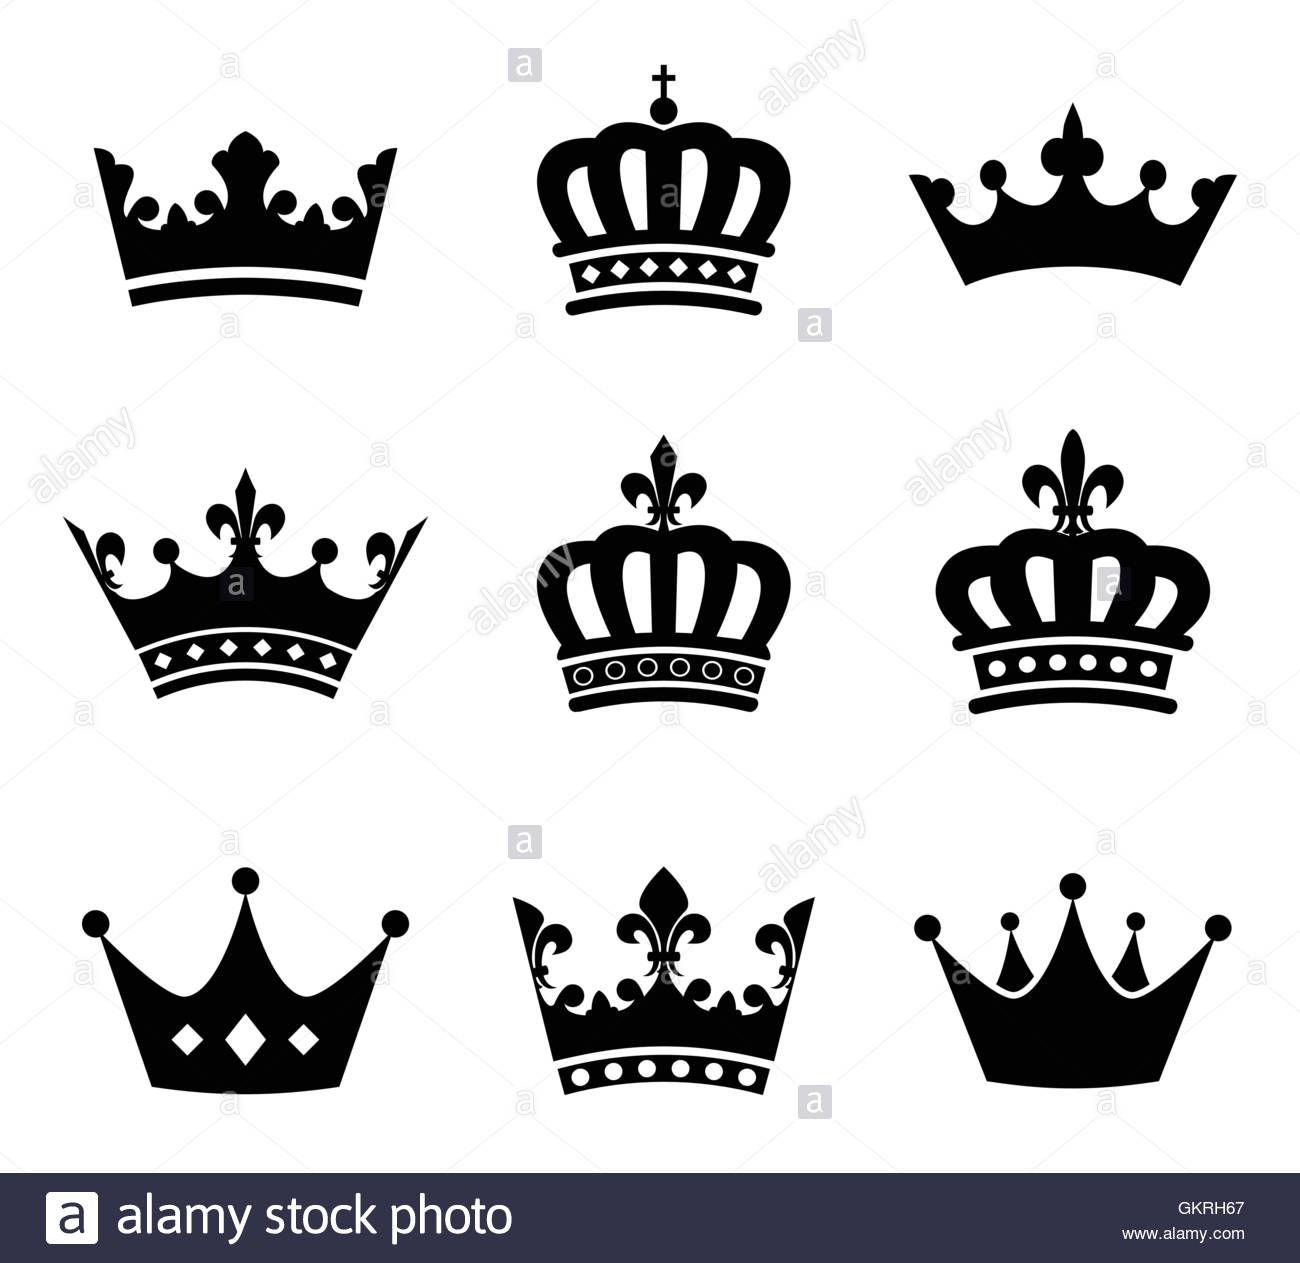 King Crown Logo - Free King Crown Logo Icon 336736 | Download King Crown Logo Icon ...